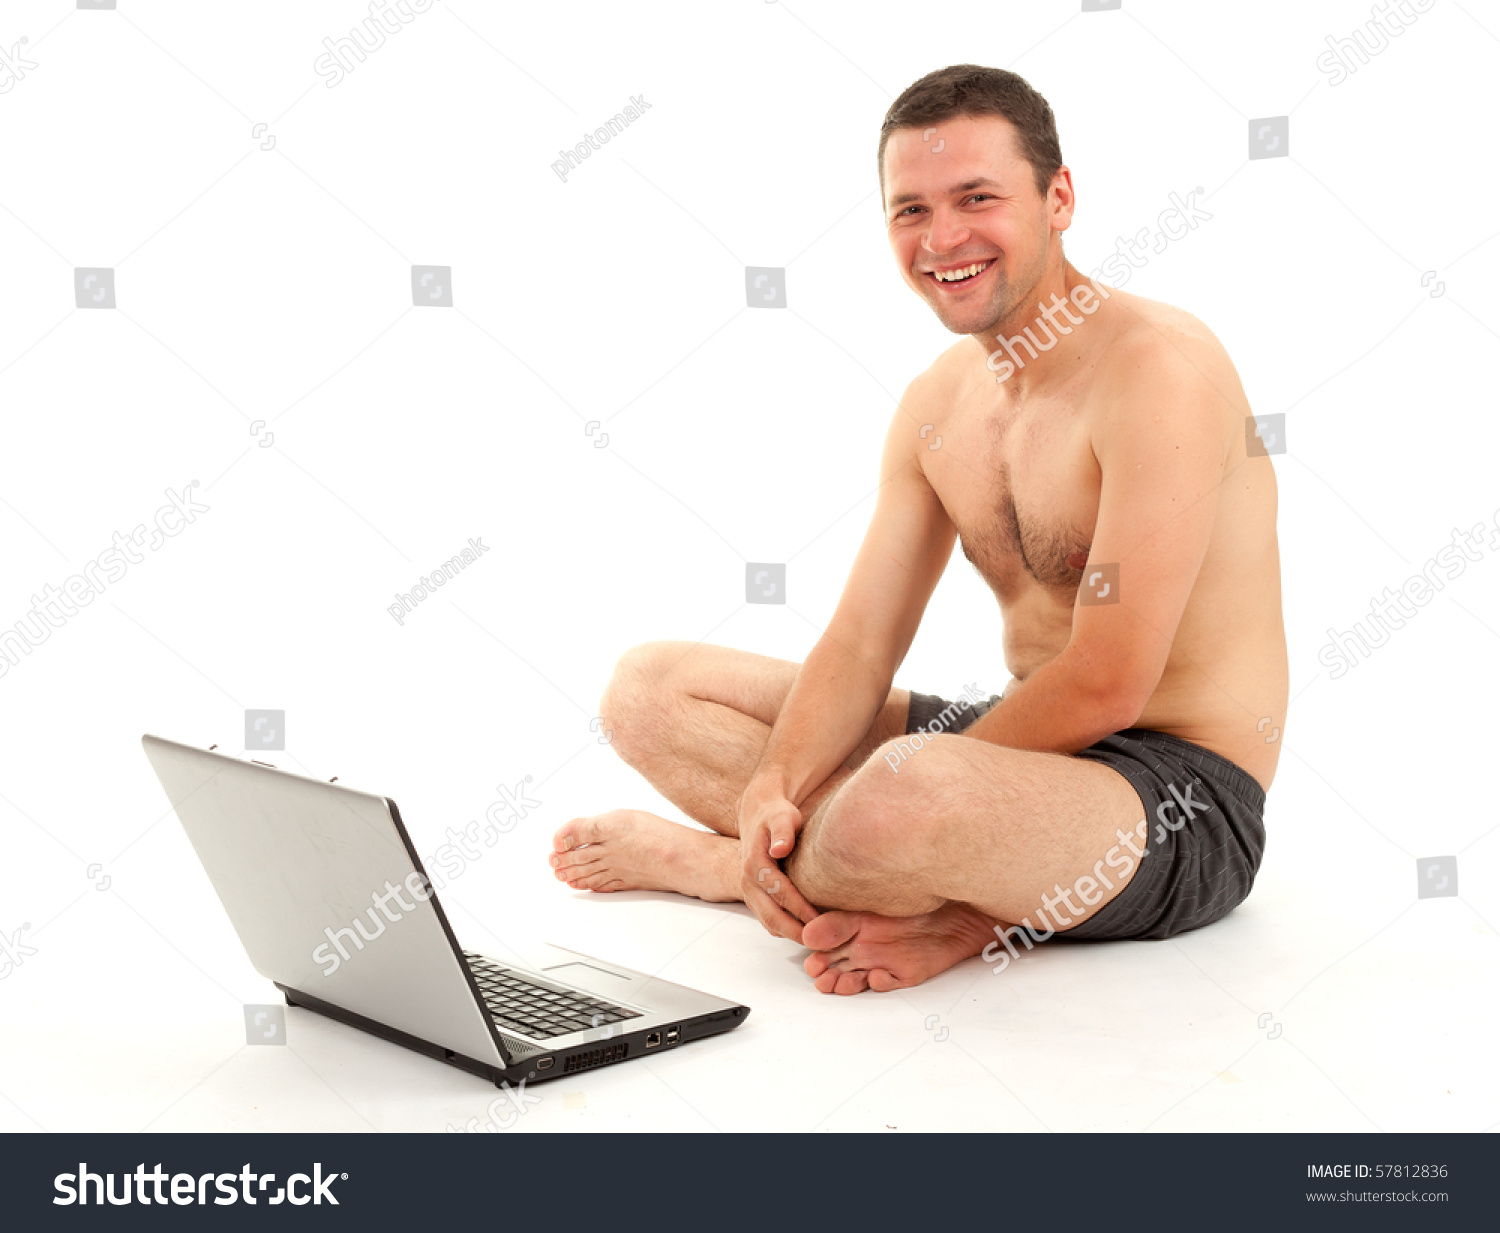 Naked Man Sitting 35